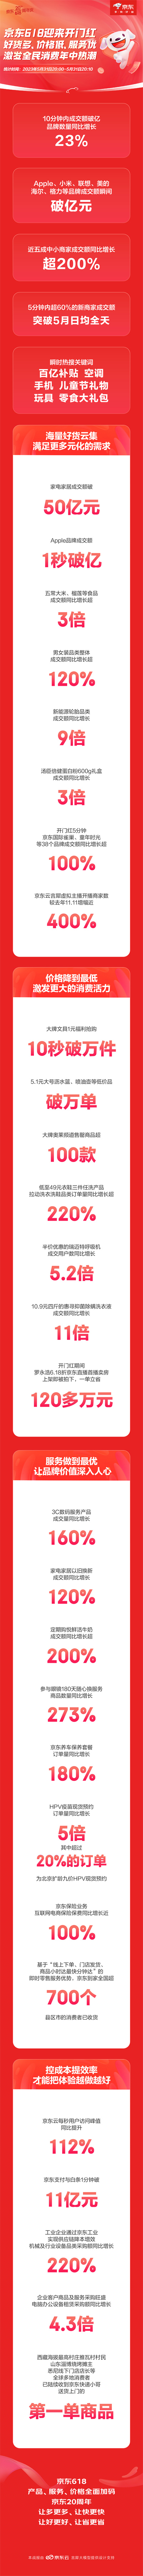 京东618晚8点火爆开场 10分钟破亿品牌同比增长23% 近五成中小商家成交额增长超200%